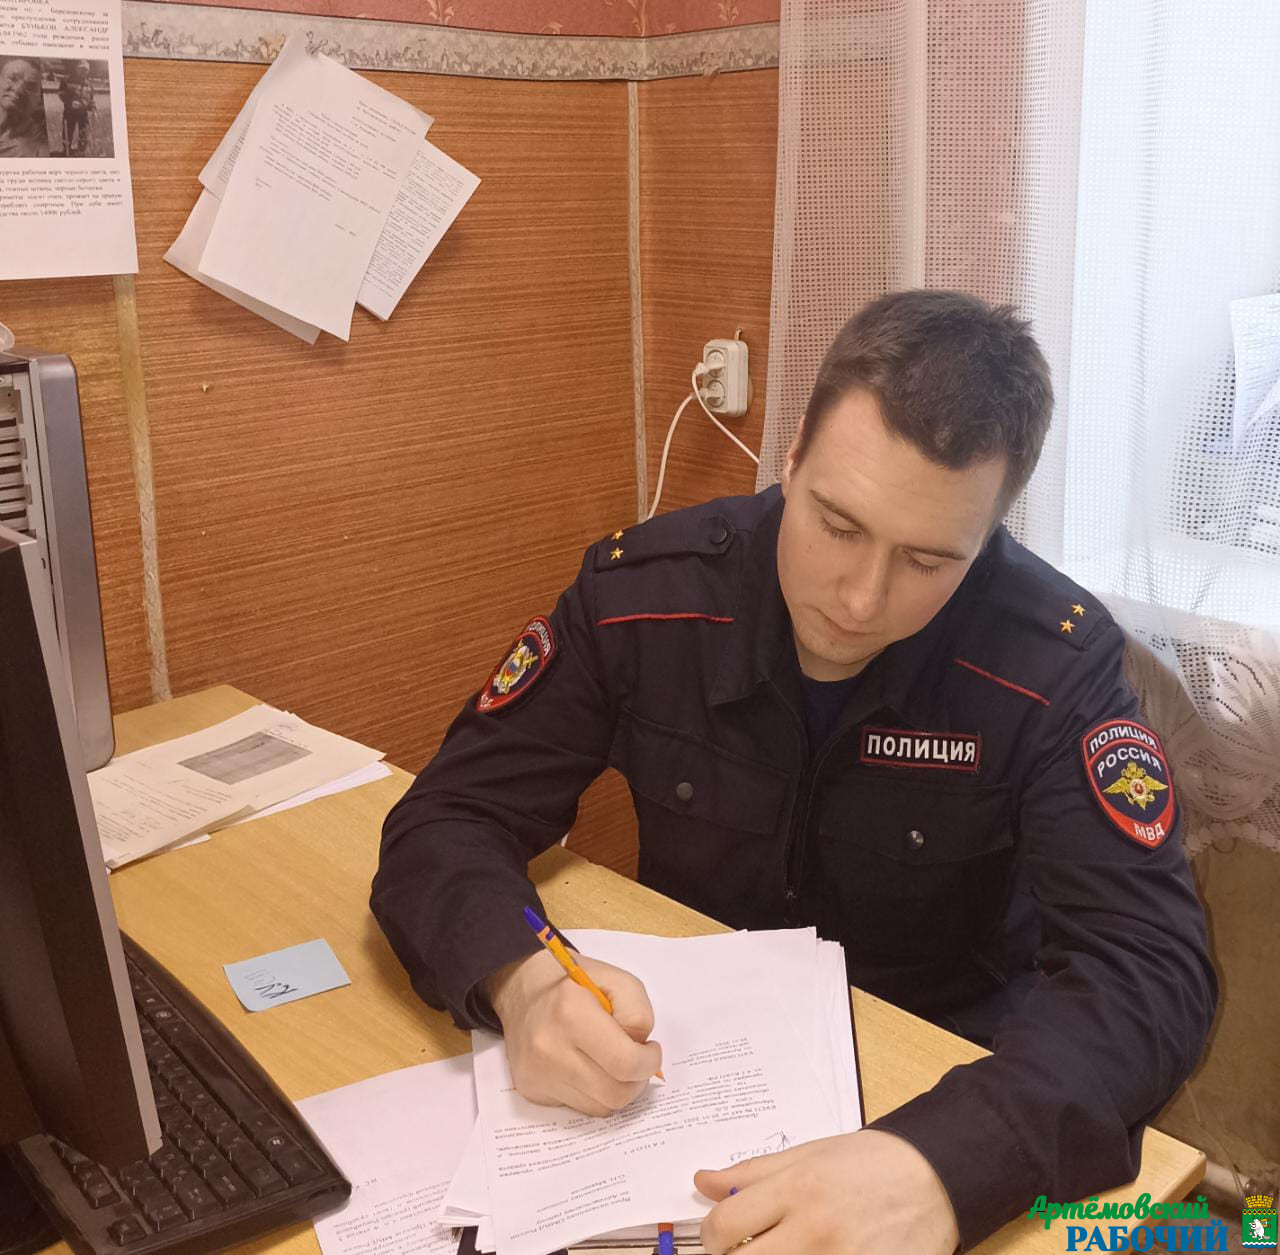 Артемовский полицейский помог вернуть сумку жительнице Екатеринбурга